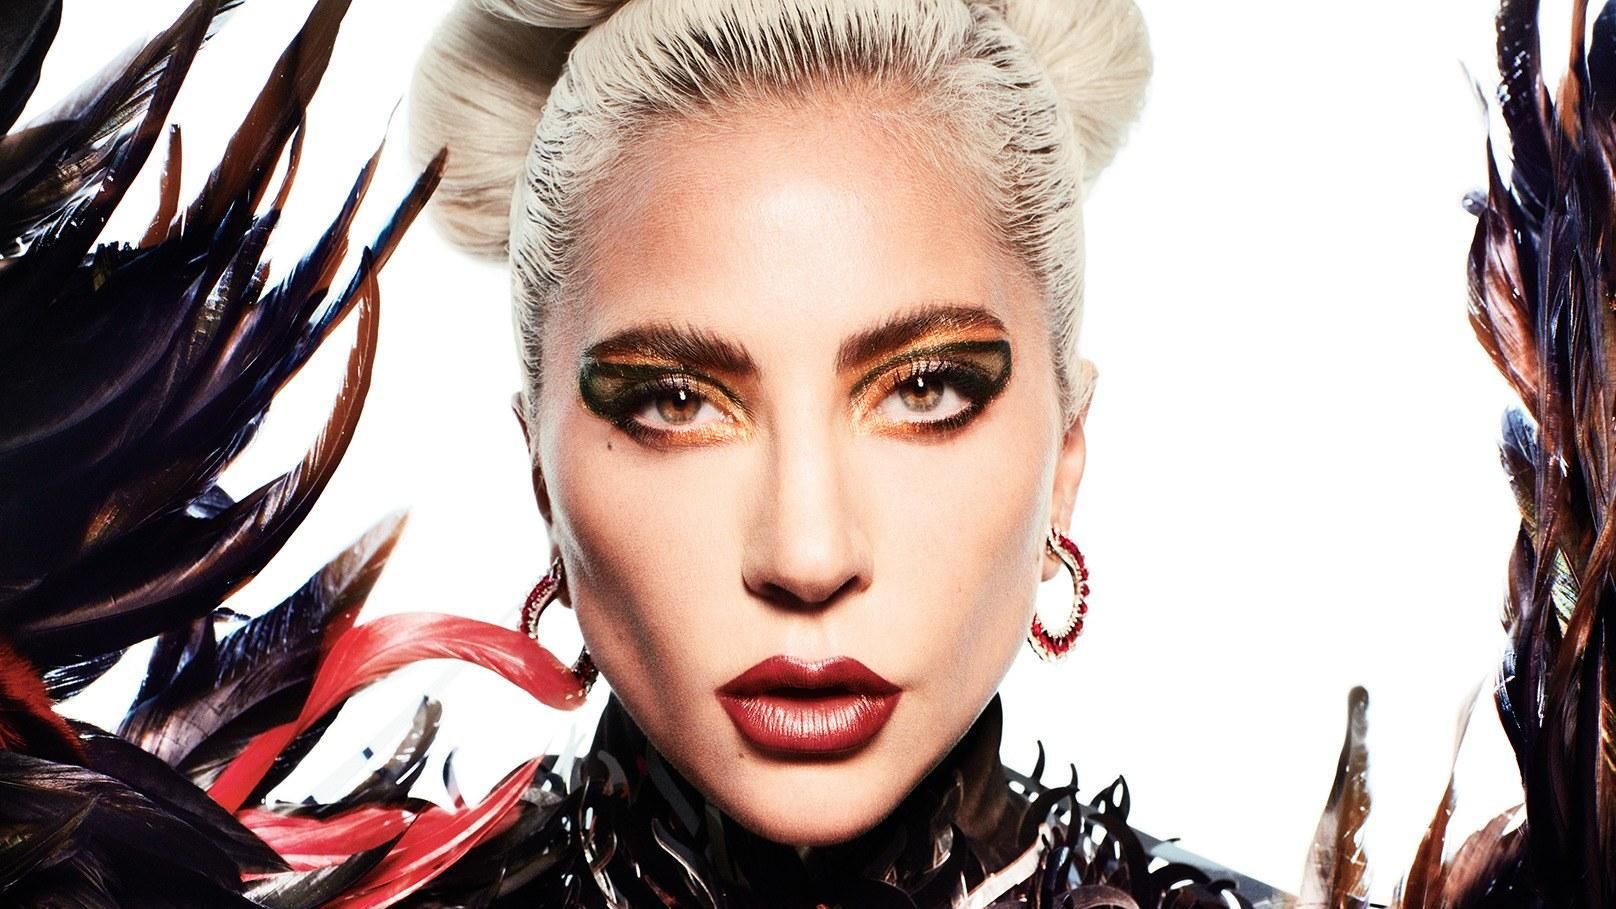 Леди Гага снялась для обложки глянца: потрясающие фото и откровенные признания певицы